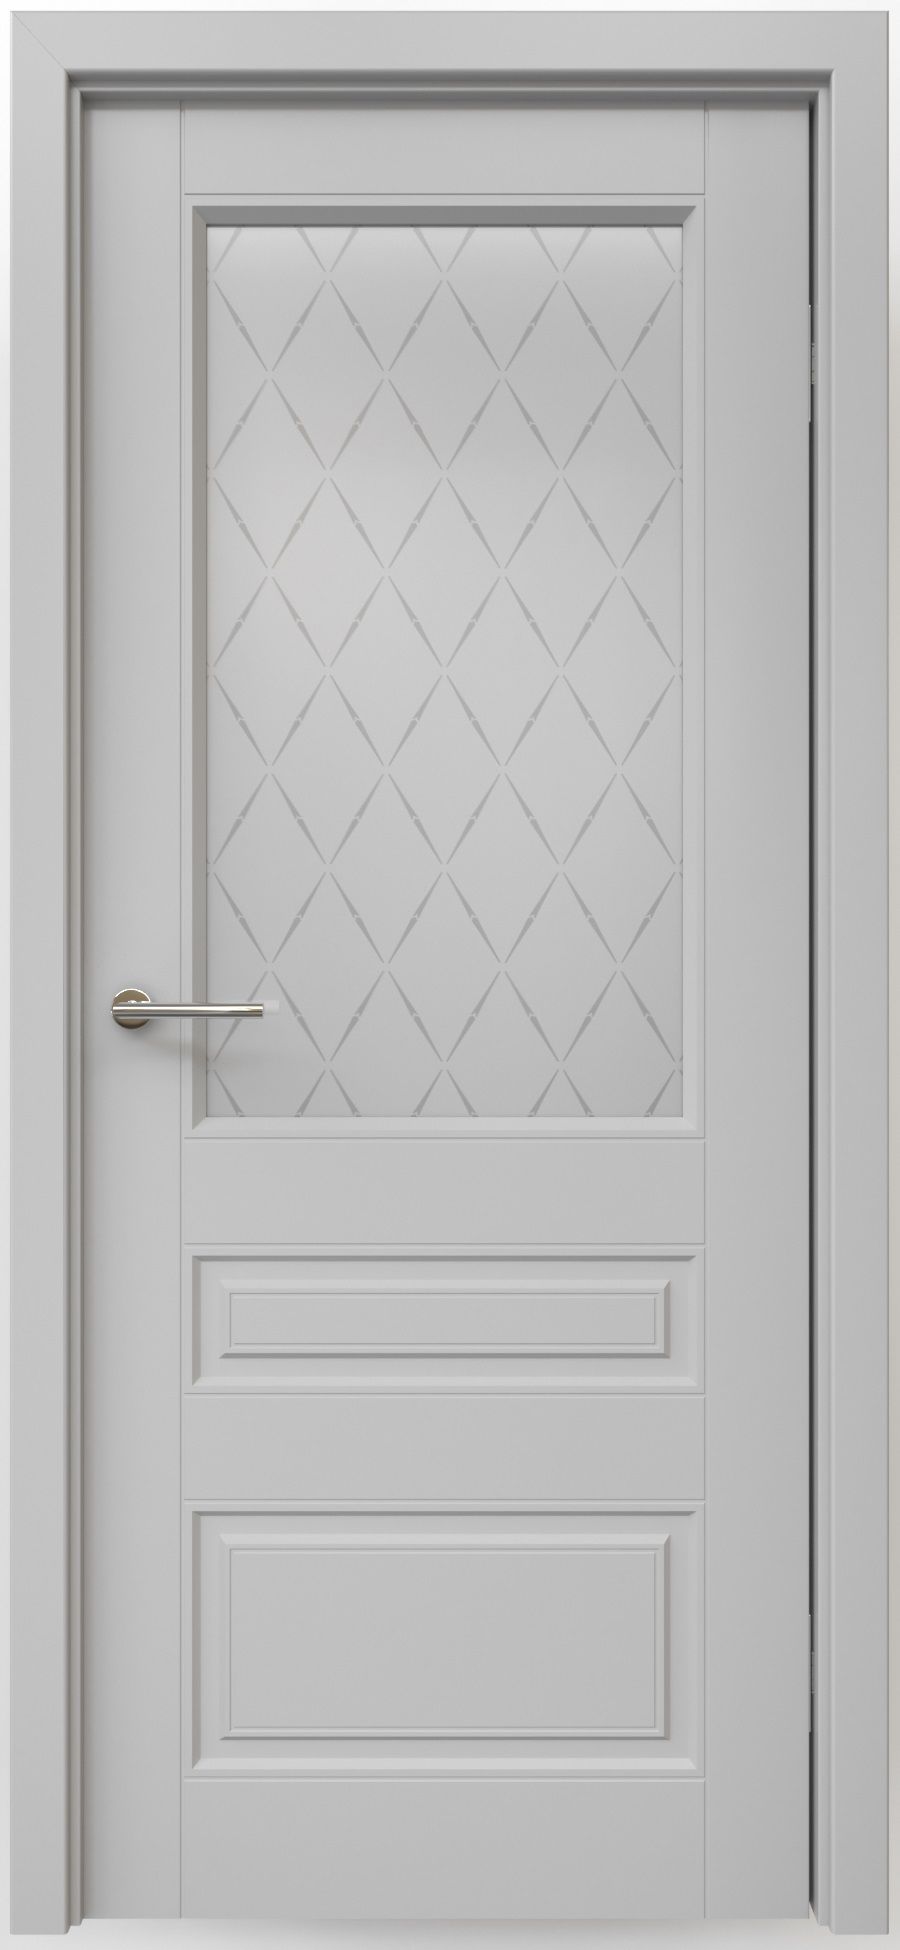 Полотно дверное остекленное Эмаль Классика-3 ПРАВОЕ 700 Серый ст. мателюкс "Лорд мат" (защелка маг)